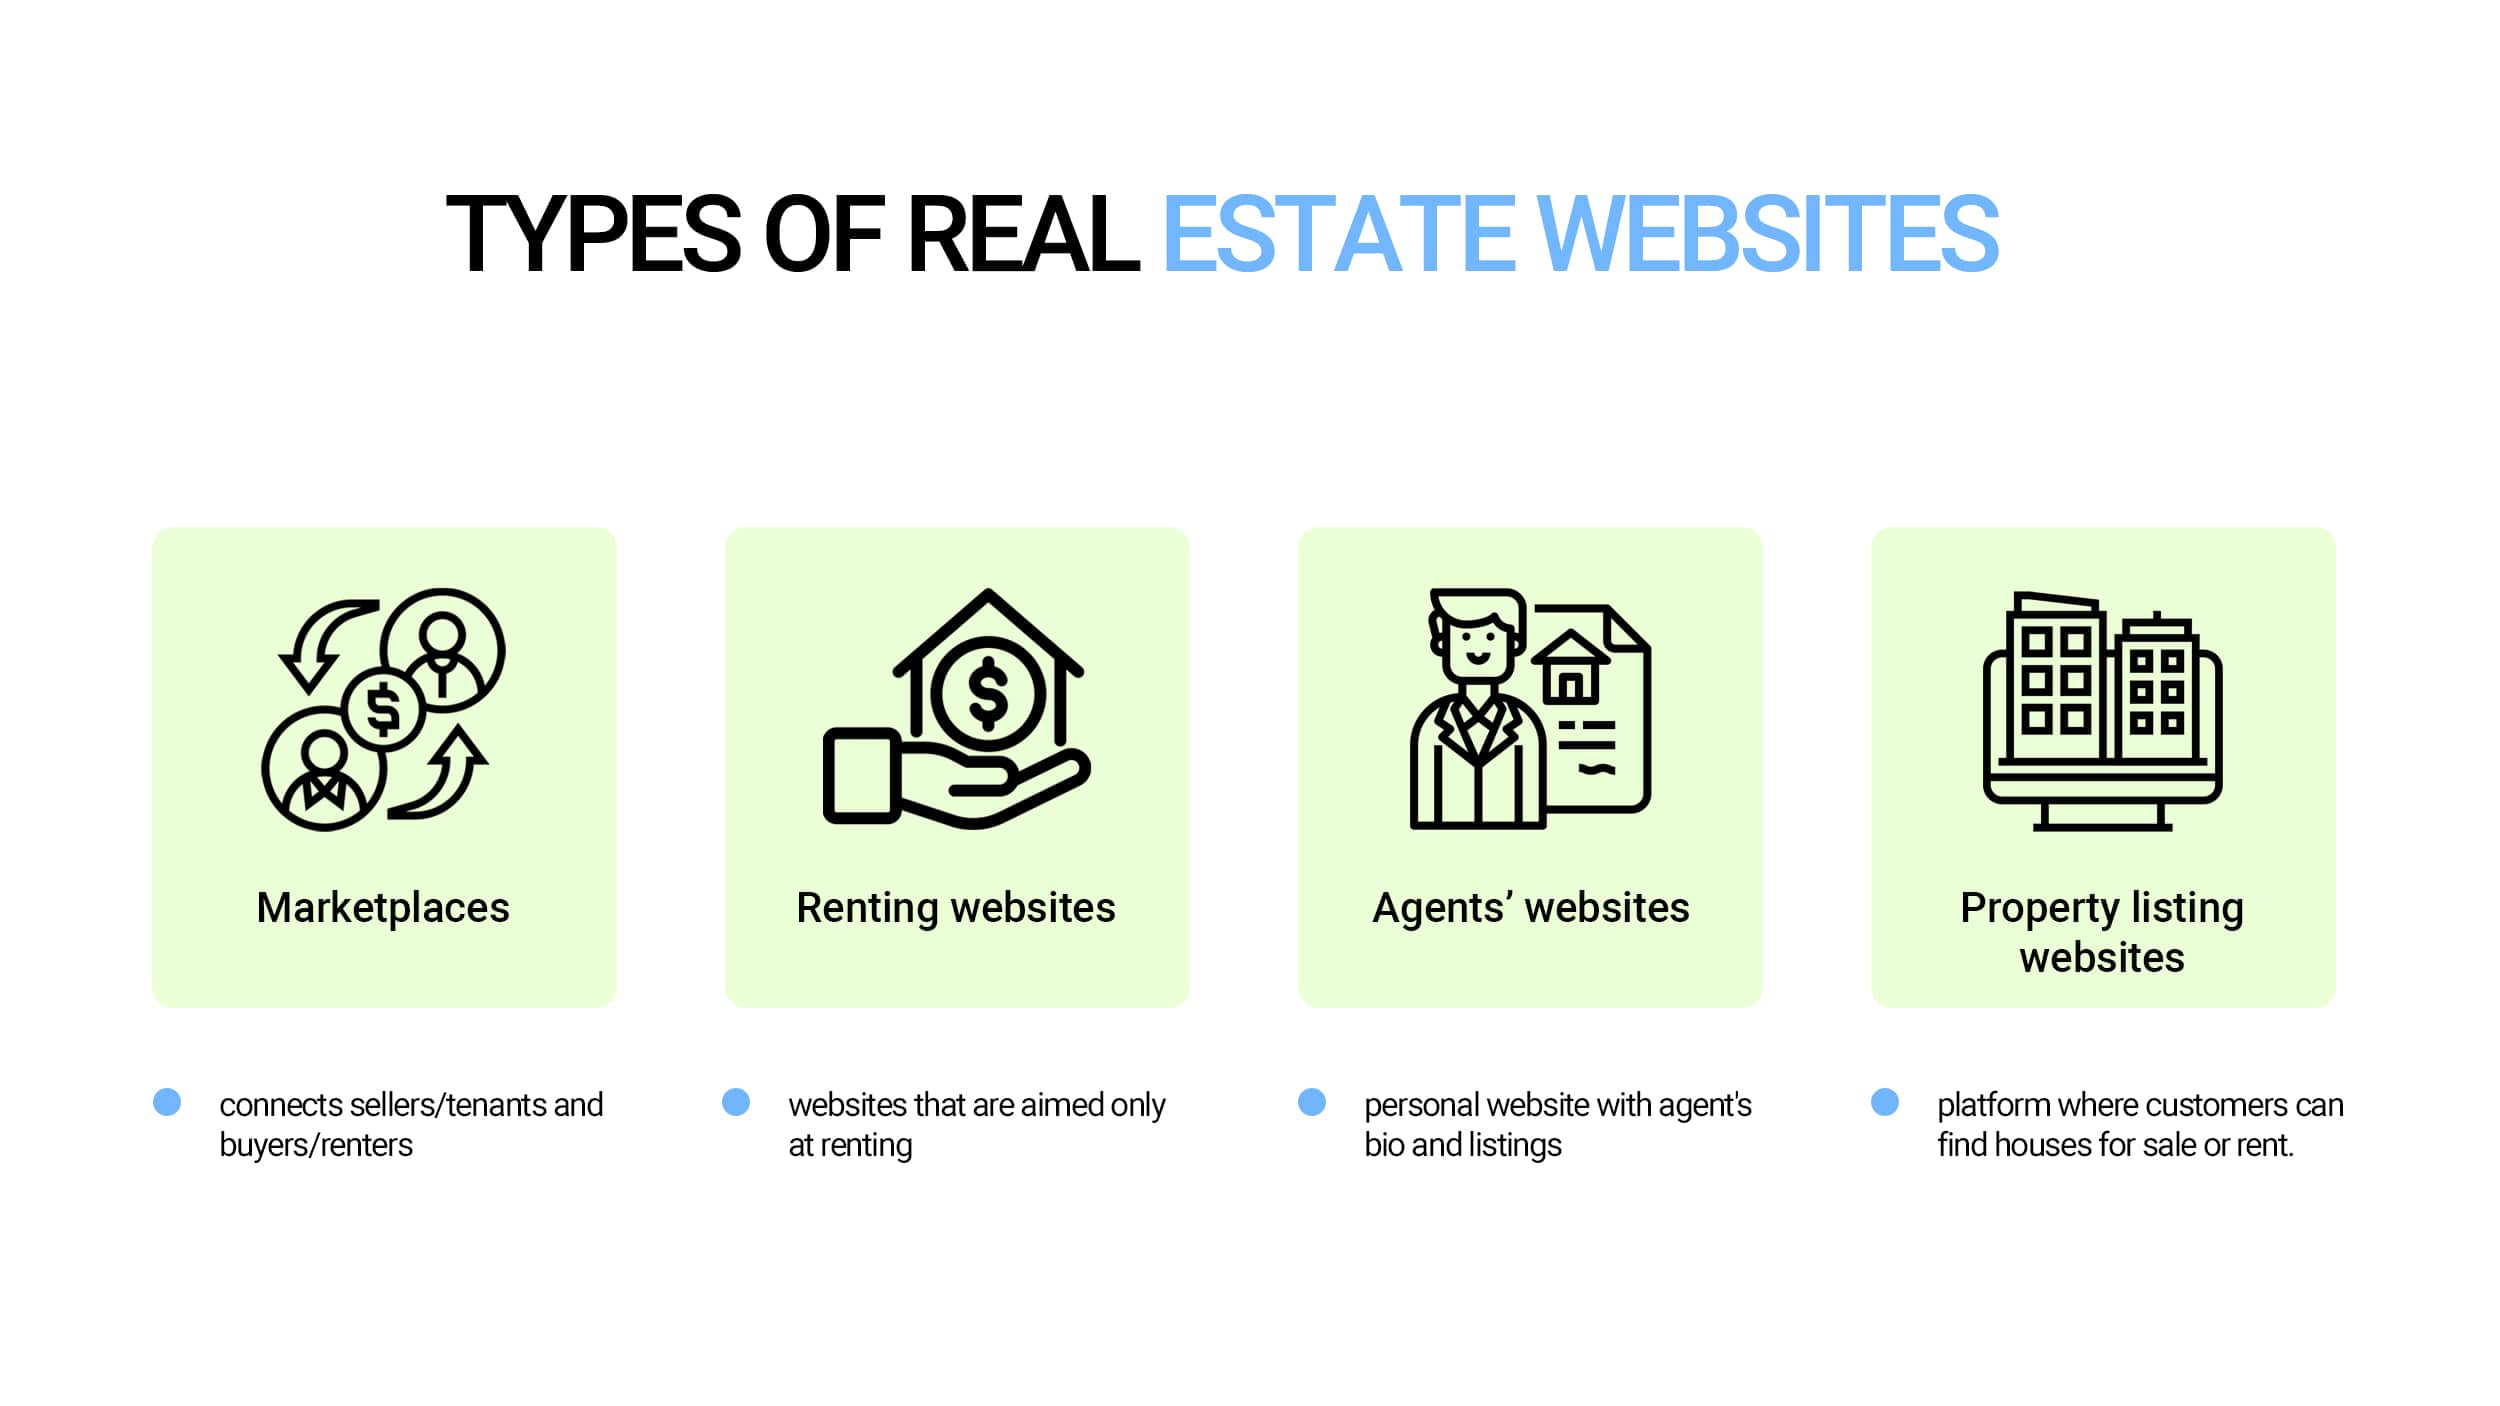 Types of real estate websites